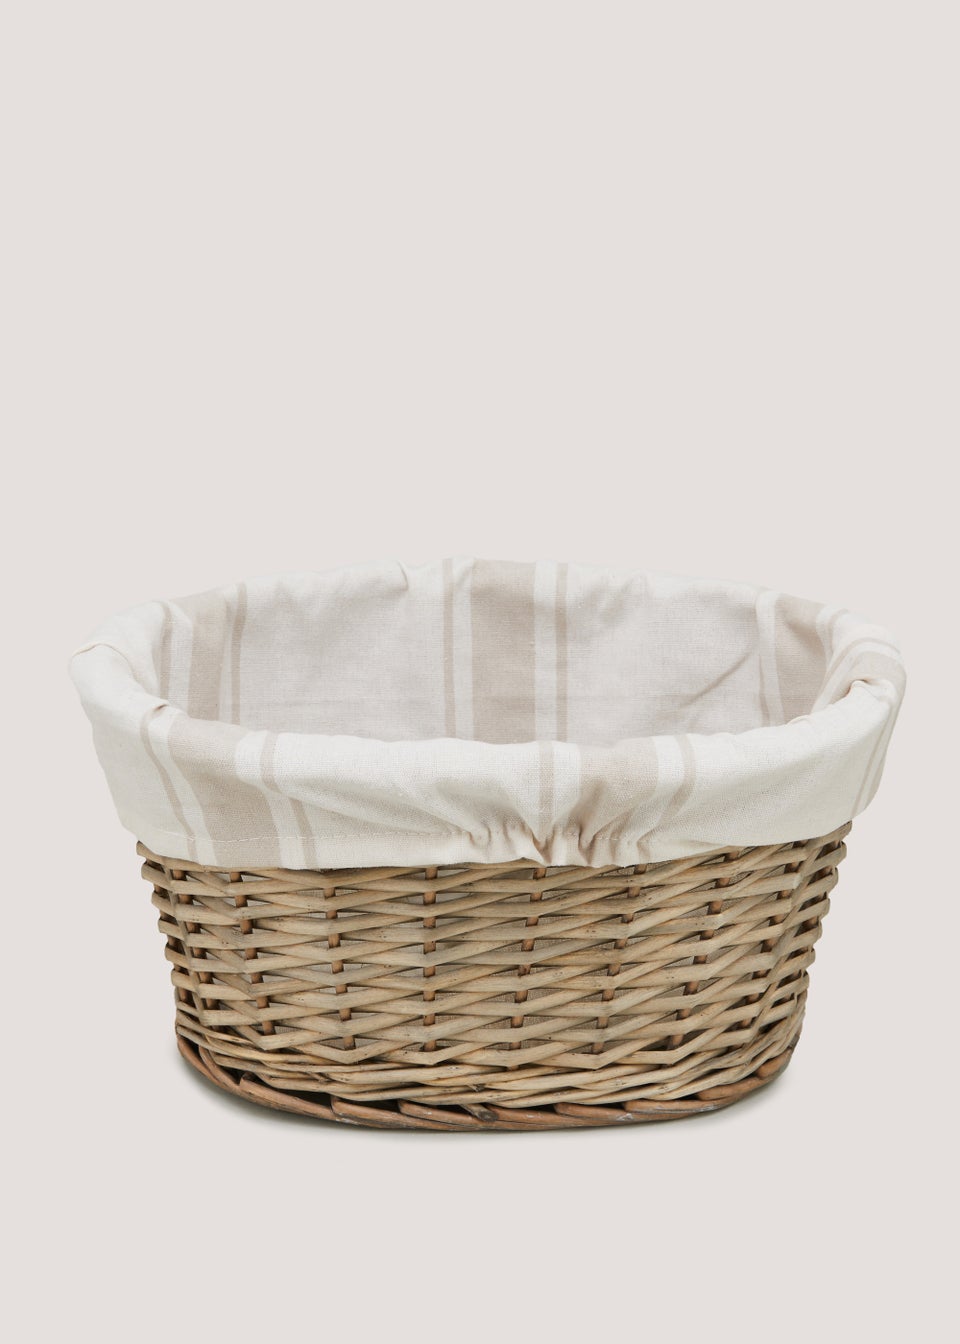 Willow Oval Storage Basket (18cm x 35cm x 25cm)